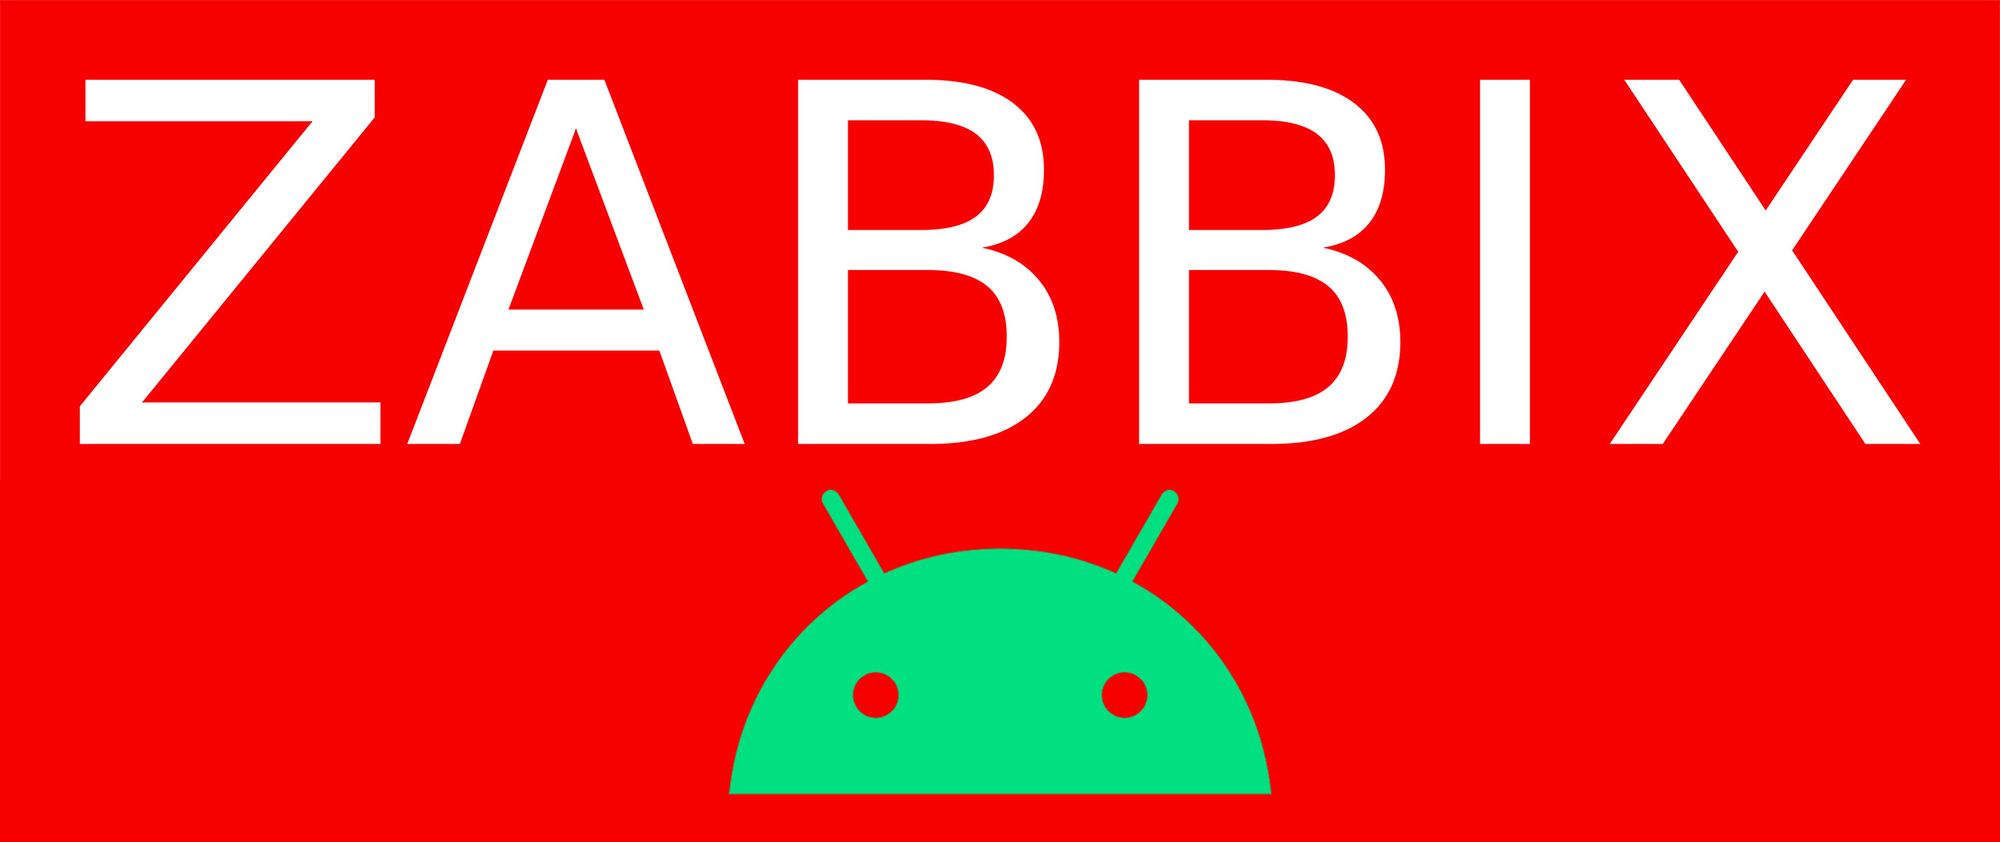 Como instalar e configurar o Unofficial Zabbix Agent no Android